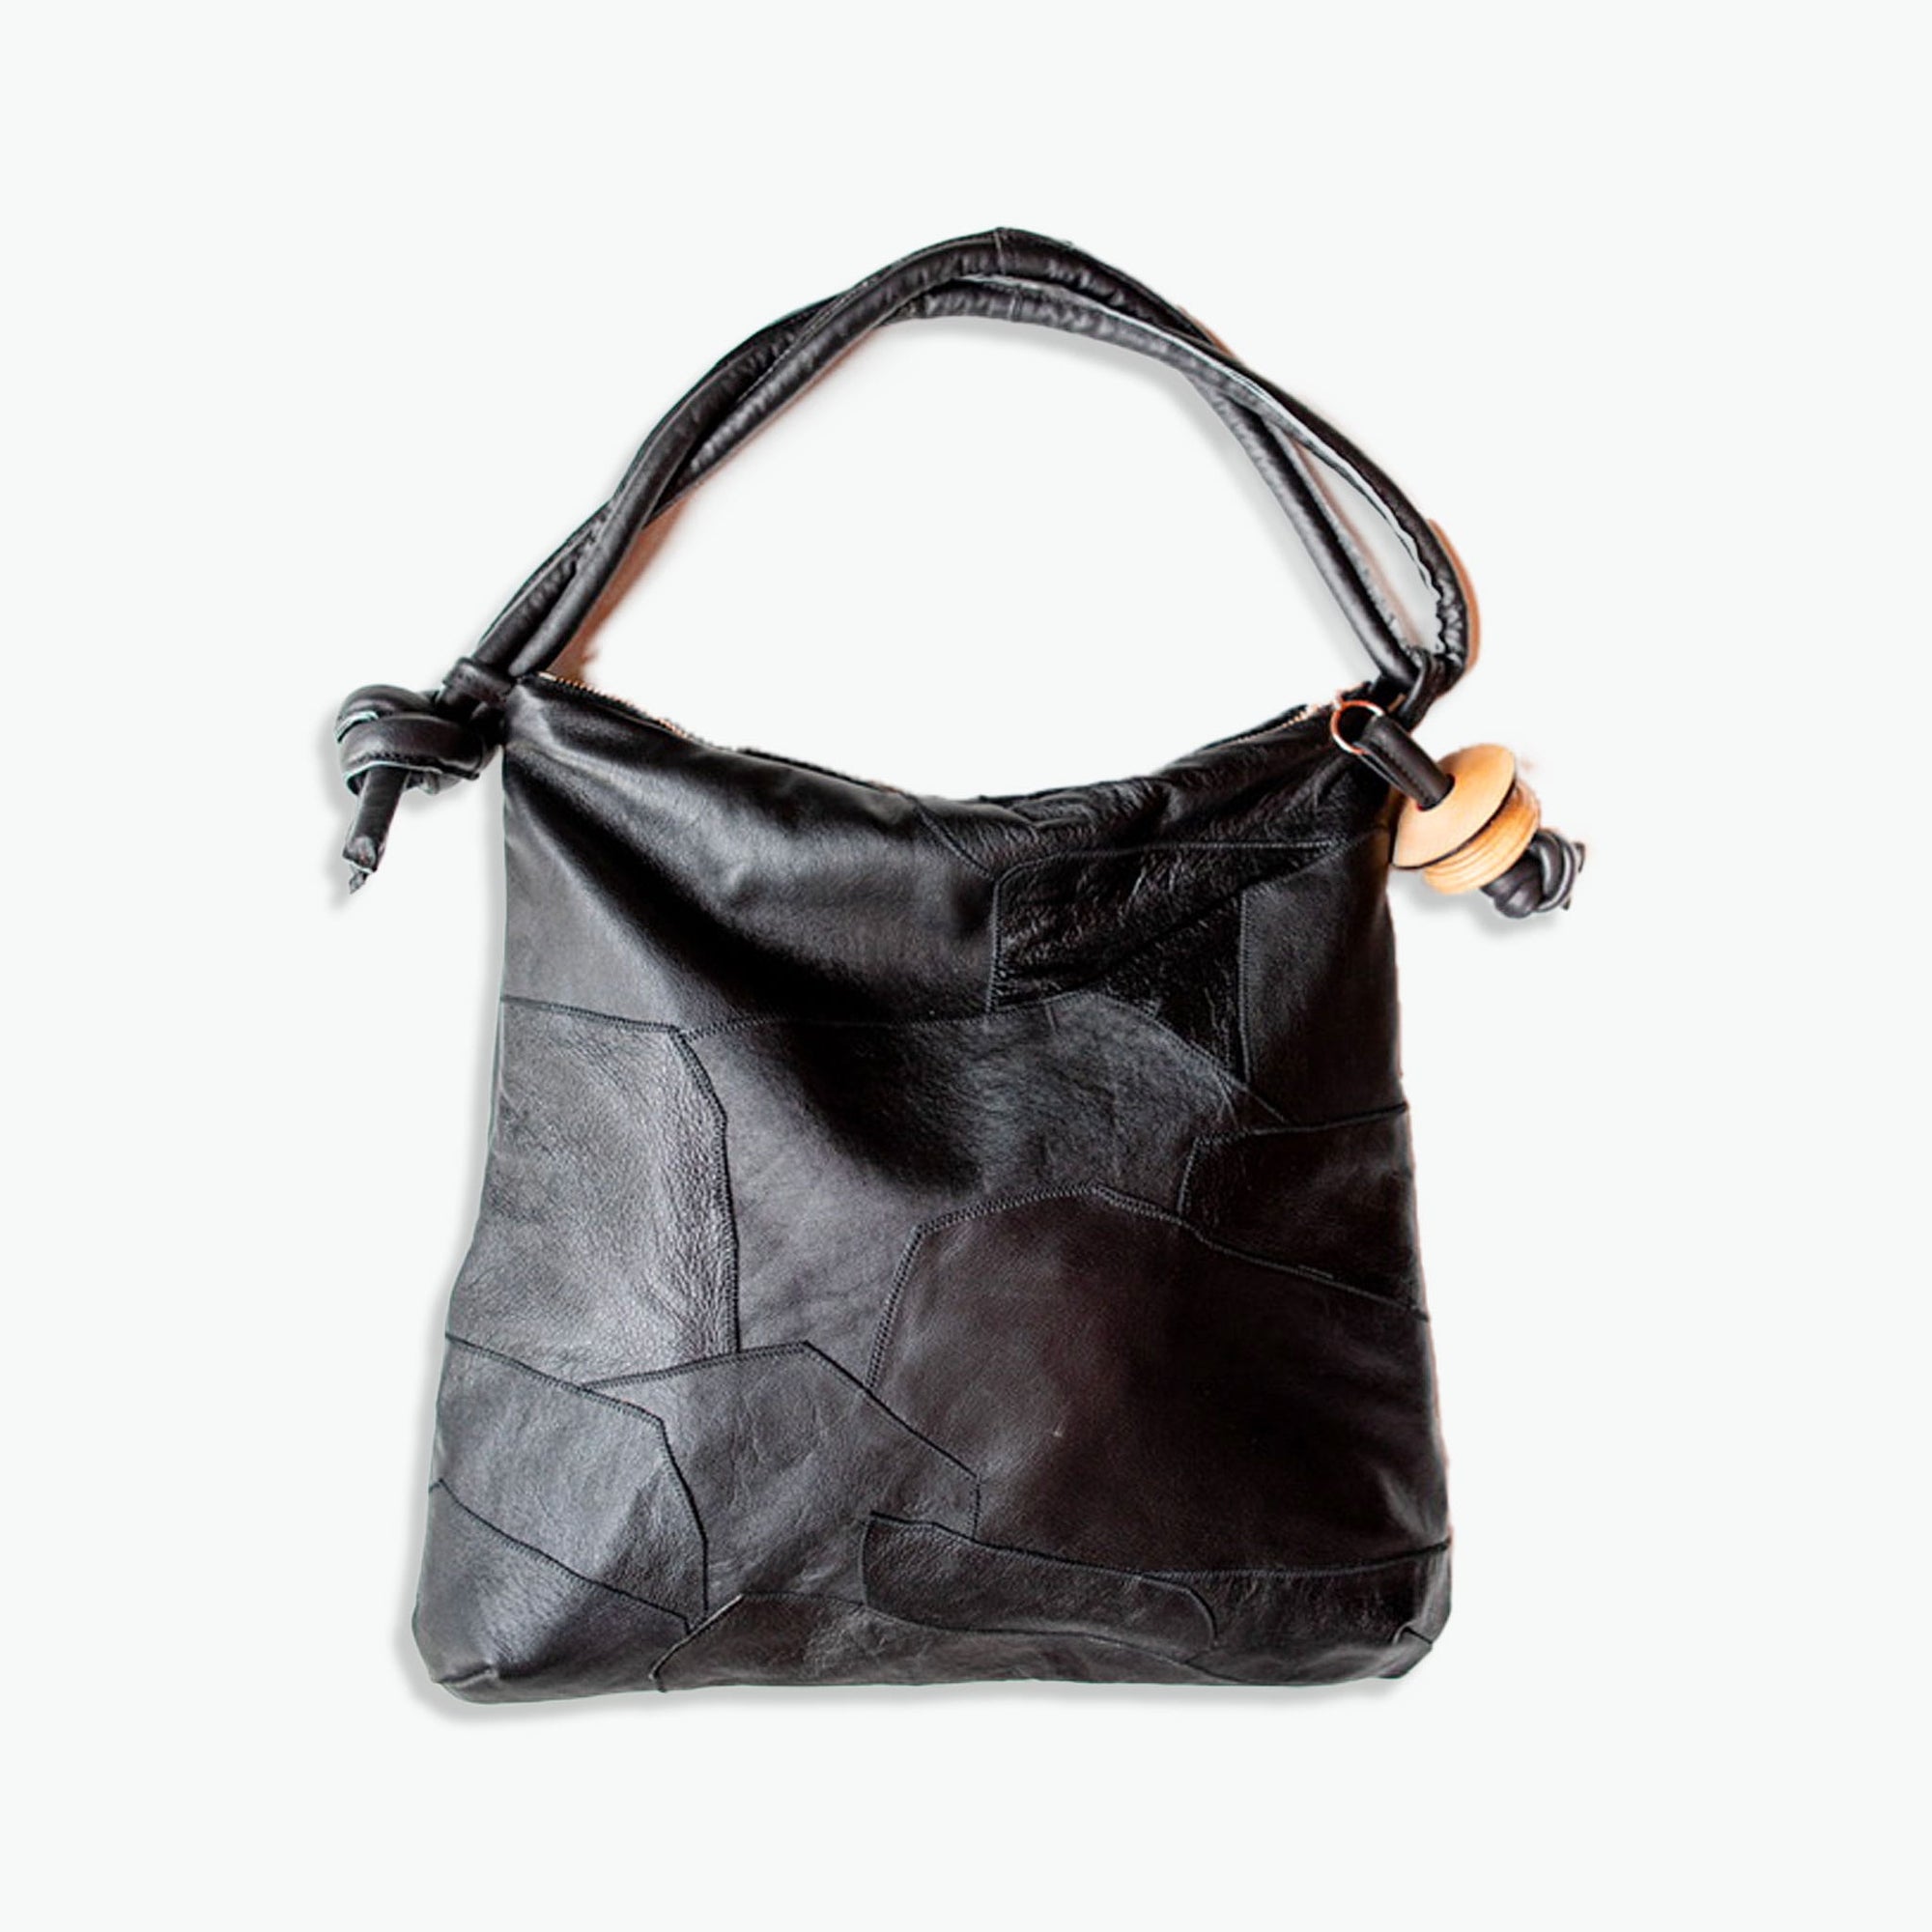 Patchwork Rolan Hobo Bag "All Black"